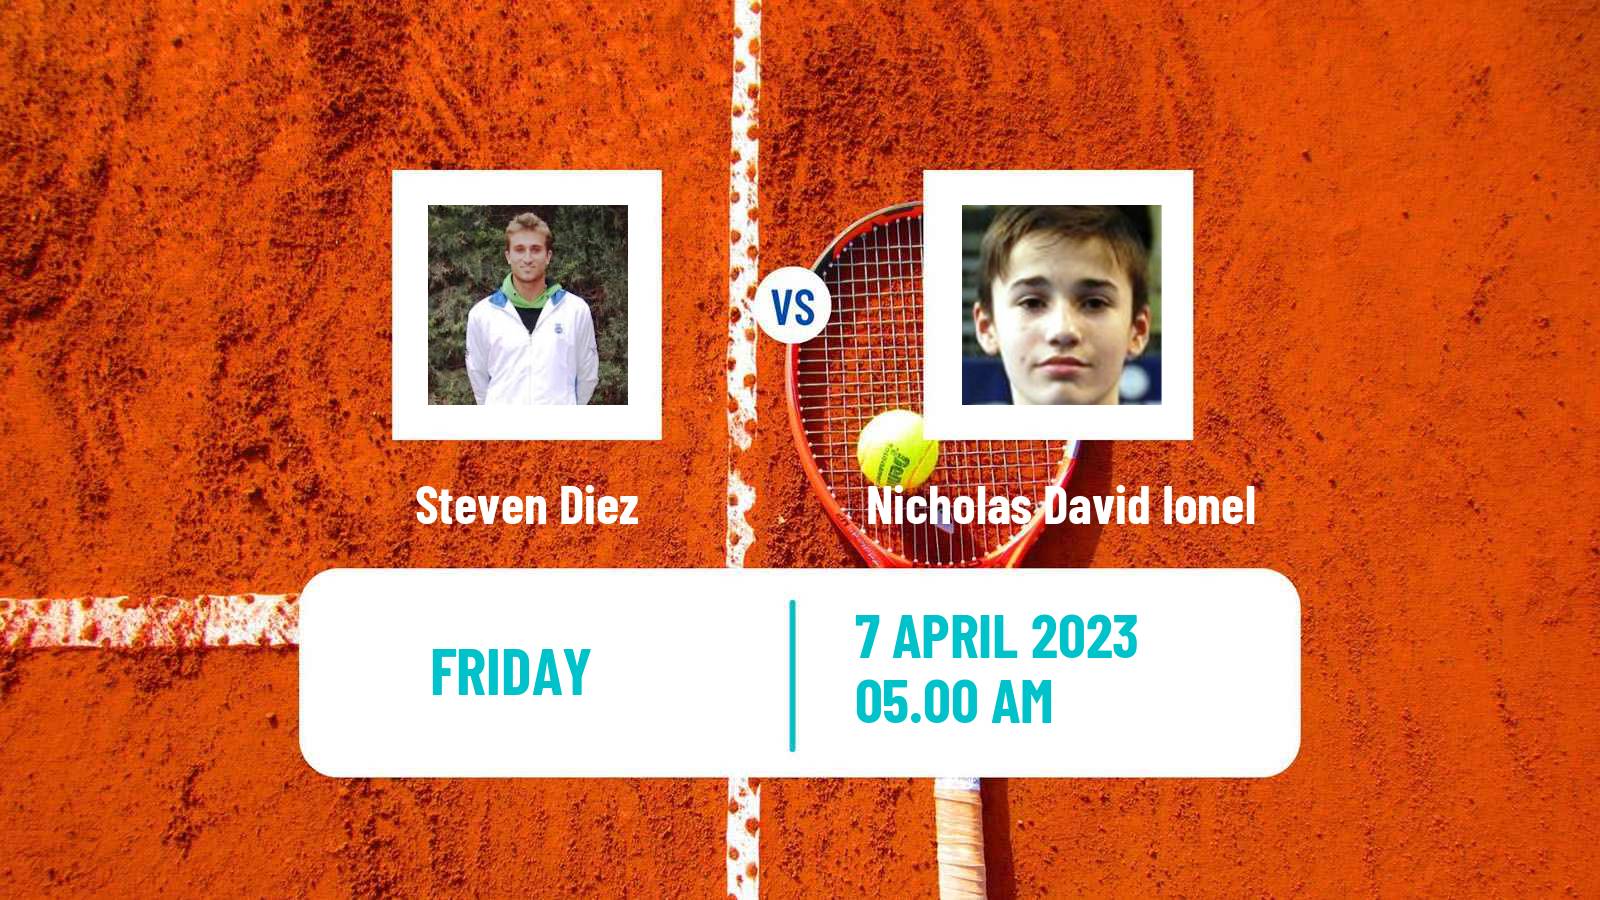 Tennis ATP Challenger Steven Diez - Nicholas David Ionel